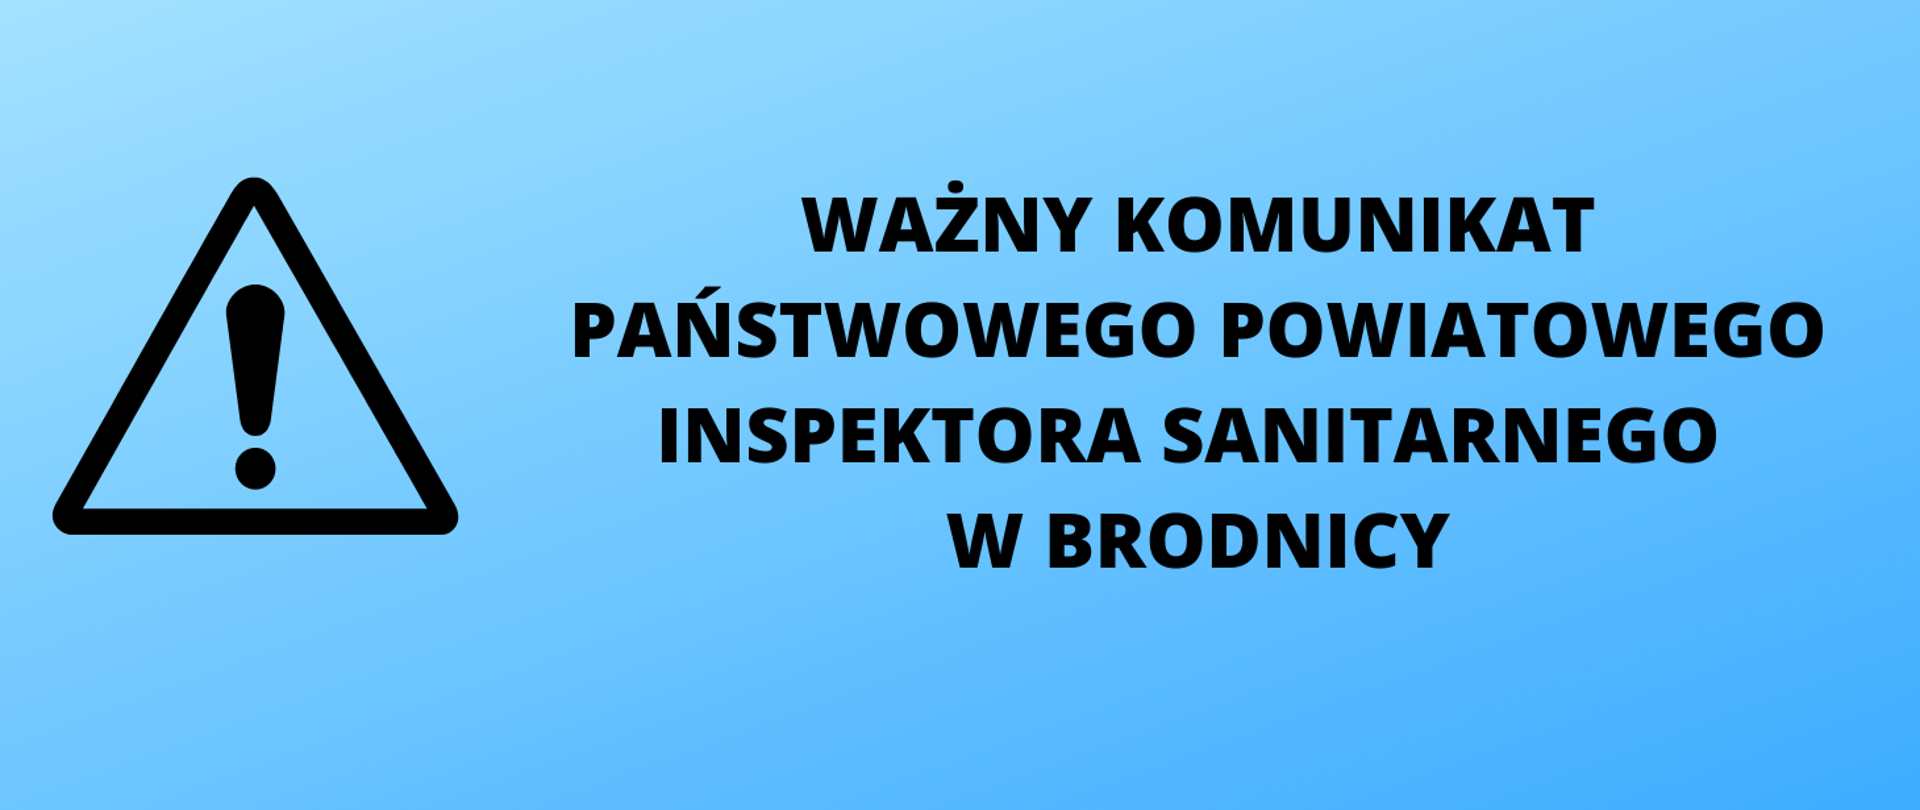 Na niebieskim tle napis: ważny komunikat Państwowego Powiatowego Inspektora Sanitarnego w Brodnicy. Z lewej strony znak uwaga.